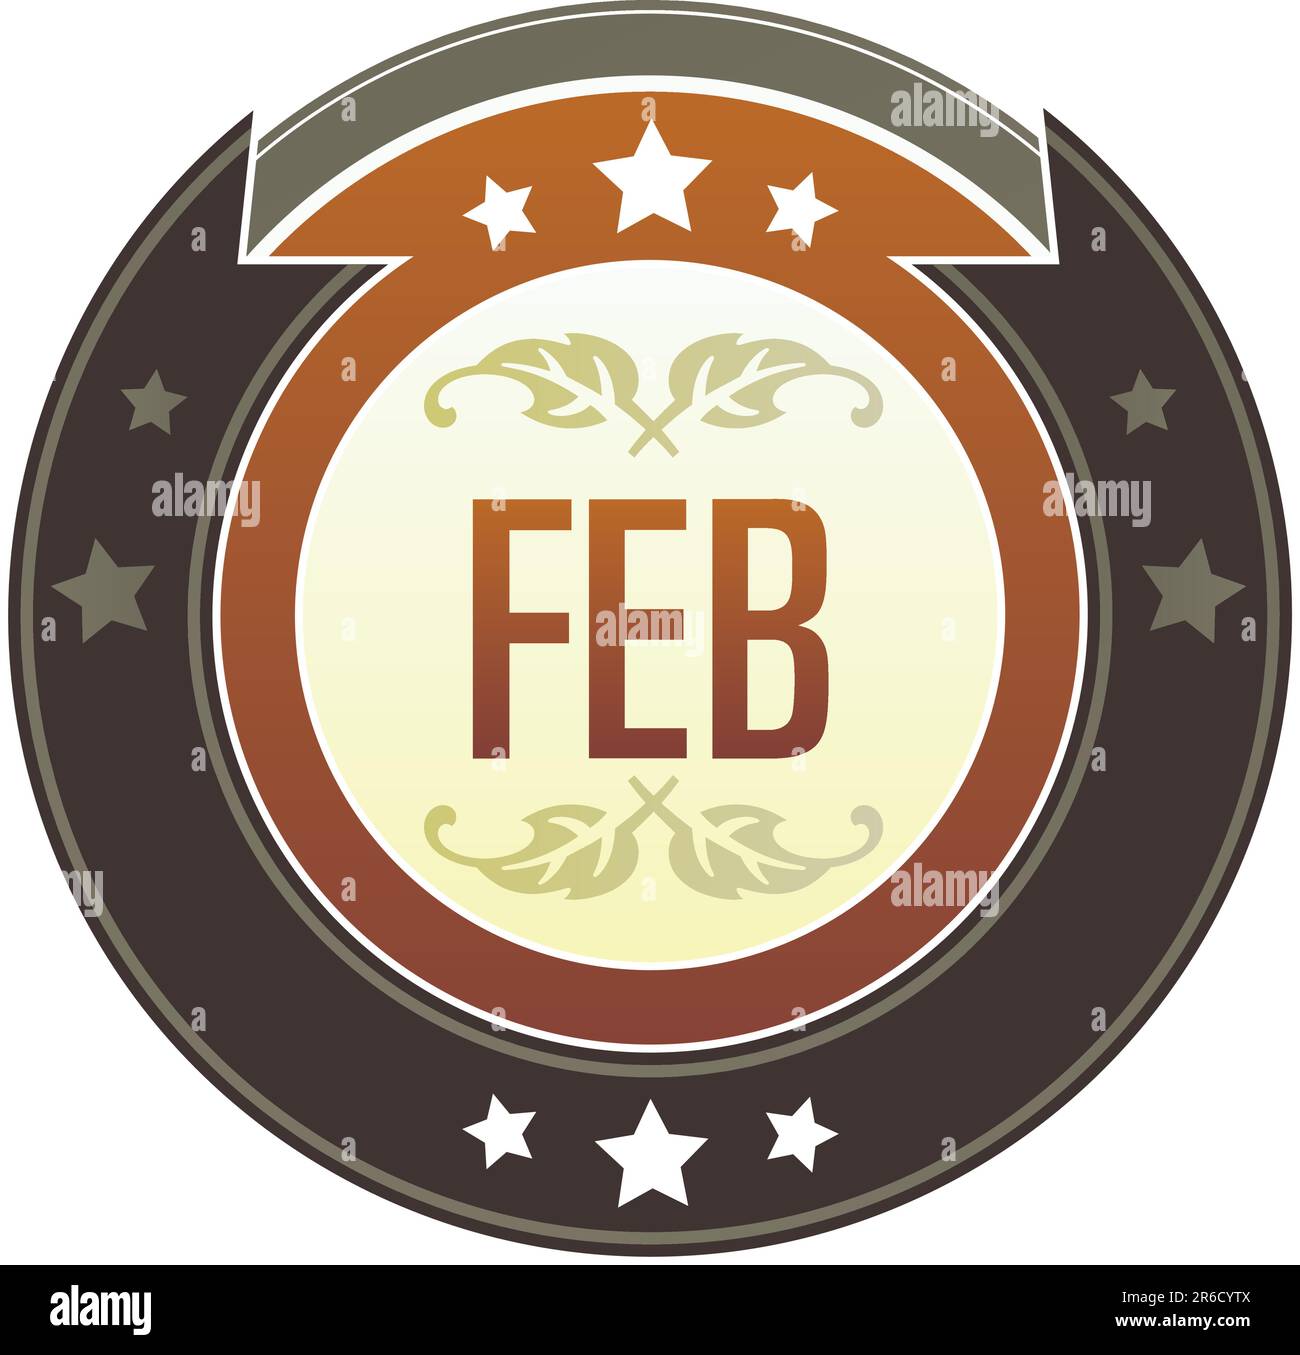 Kalendersymbol für den Monat Februar auf rundem rot-braunem kaiserlichen Vektorknopf mit Sternakzenten geeignet für die Verwendung auf der Website, in Printmedien und Werbespots ... Stock Vektor